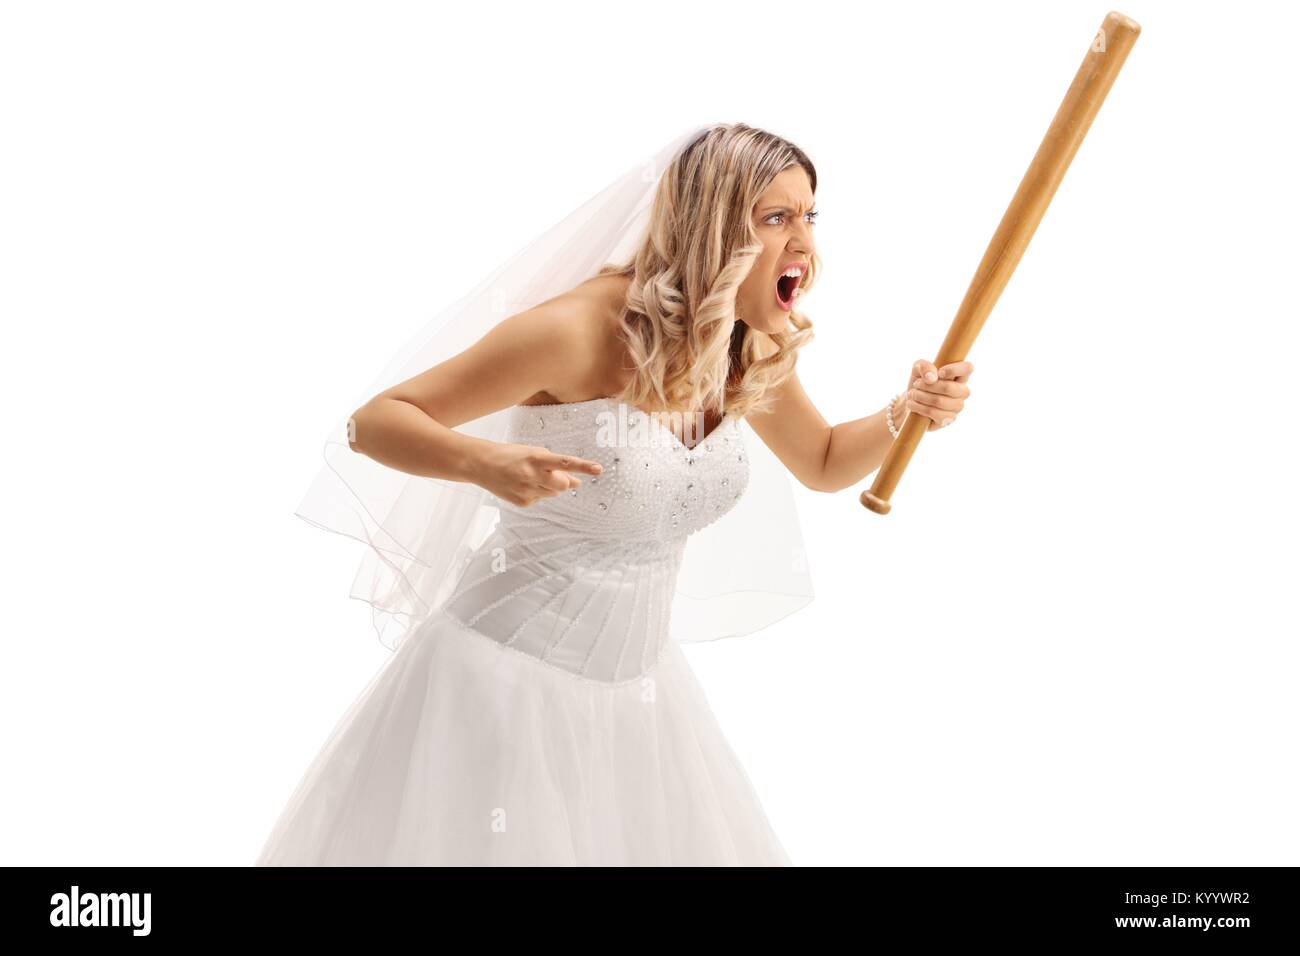 La mariée en colère avec un bâton de baseball isolé sur fond blanc Banque D'Images